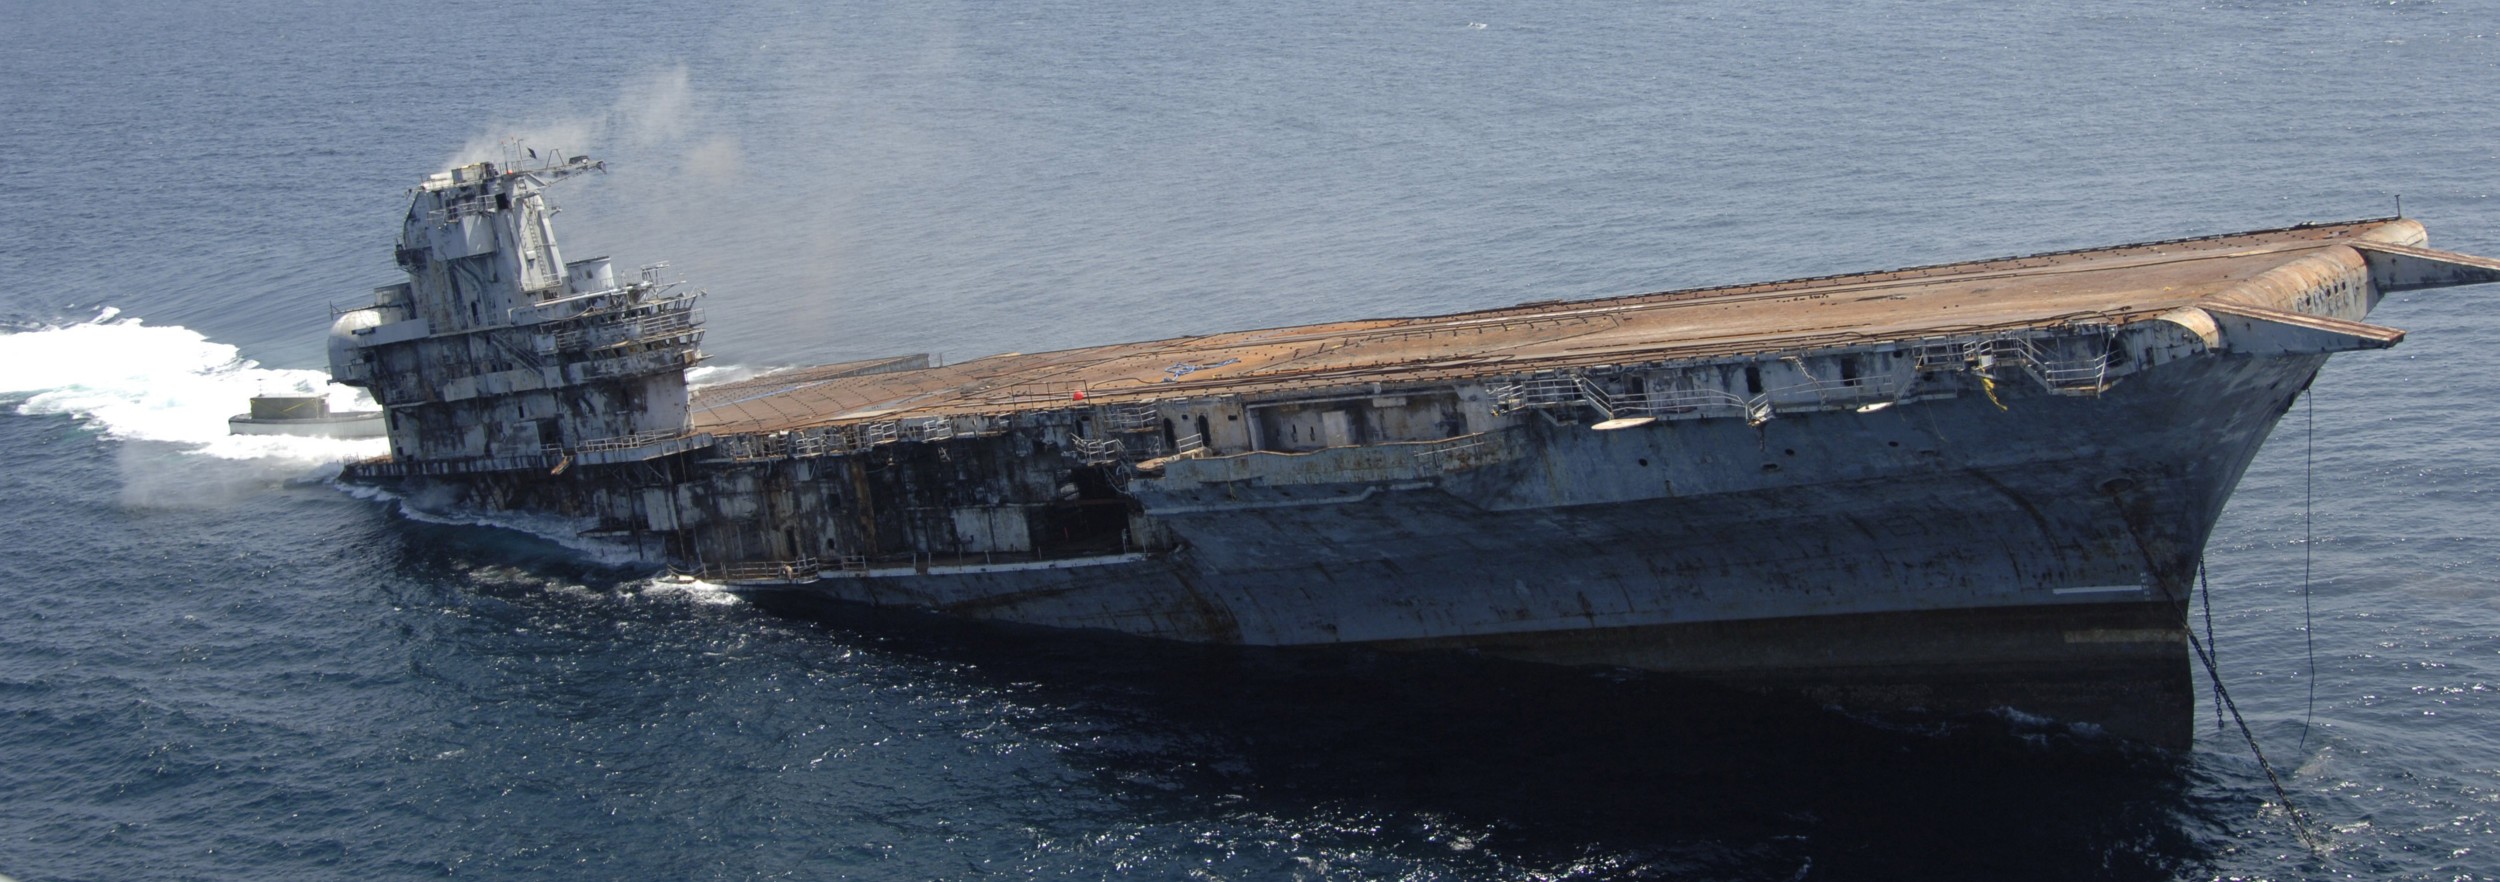 cv-34 uss oriskany essex class aircraft carrier us navy sinking artificial reef off florida 124